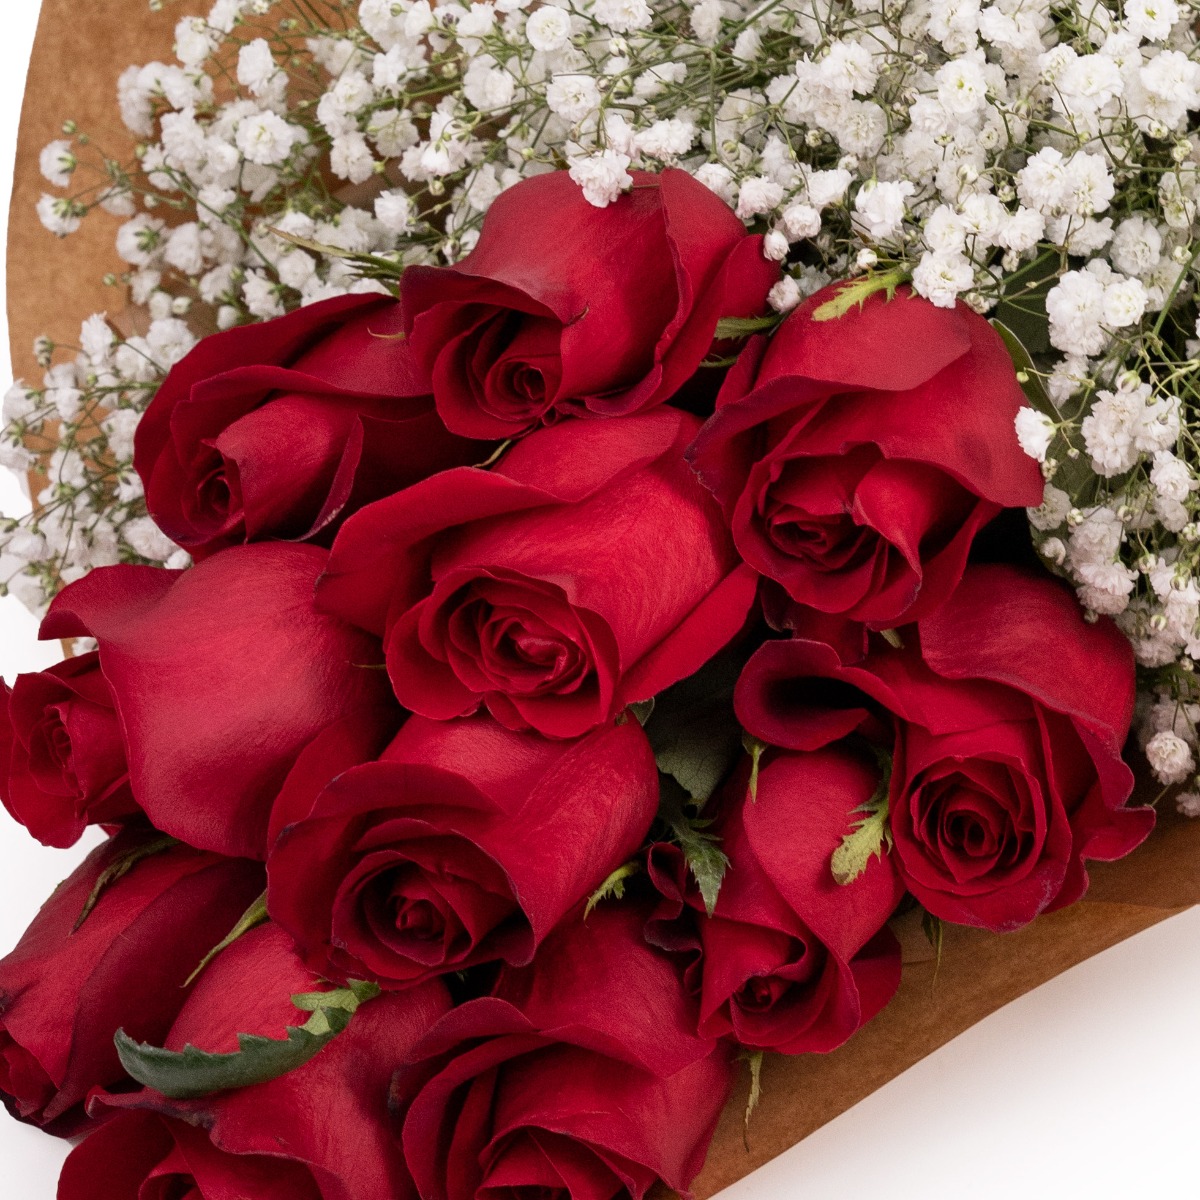 Buchet foarte romantic trandafiri rosii